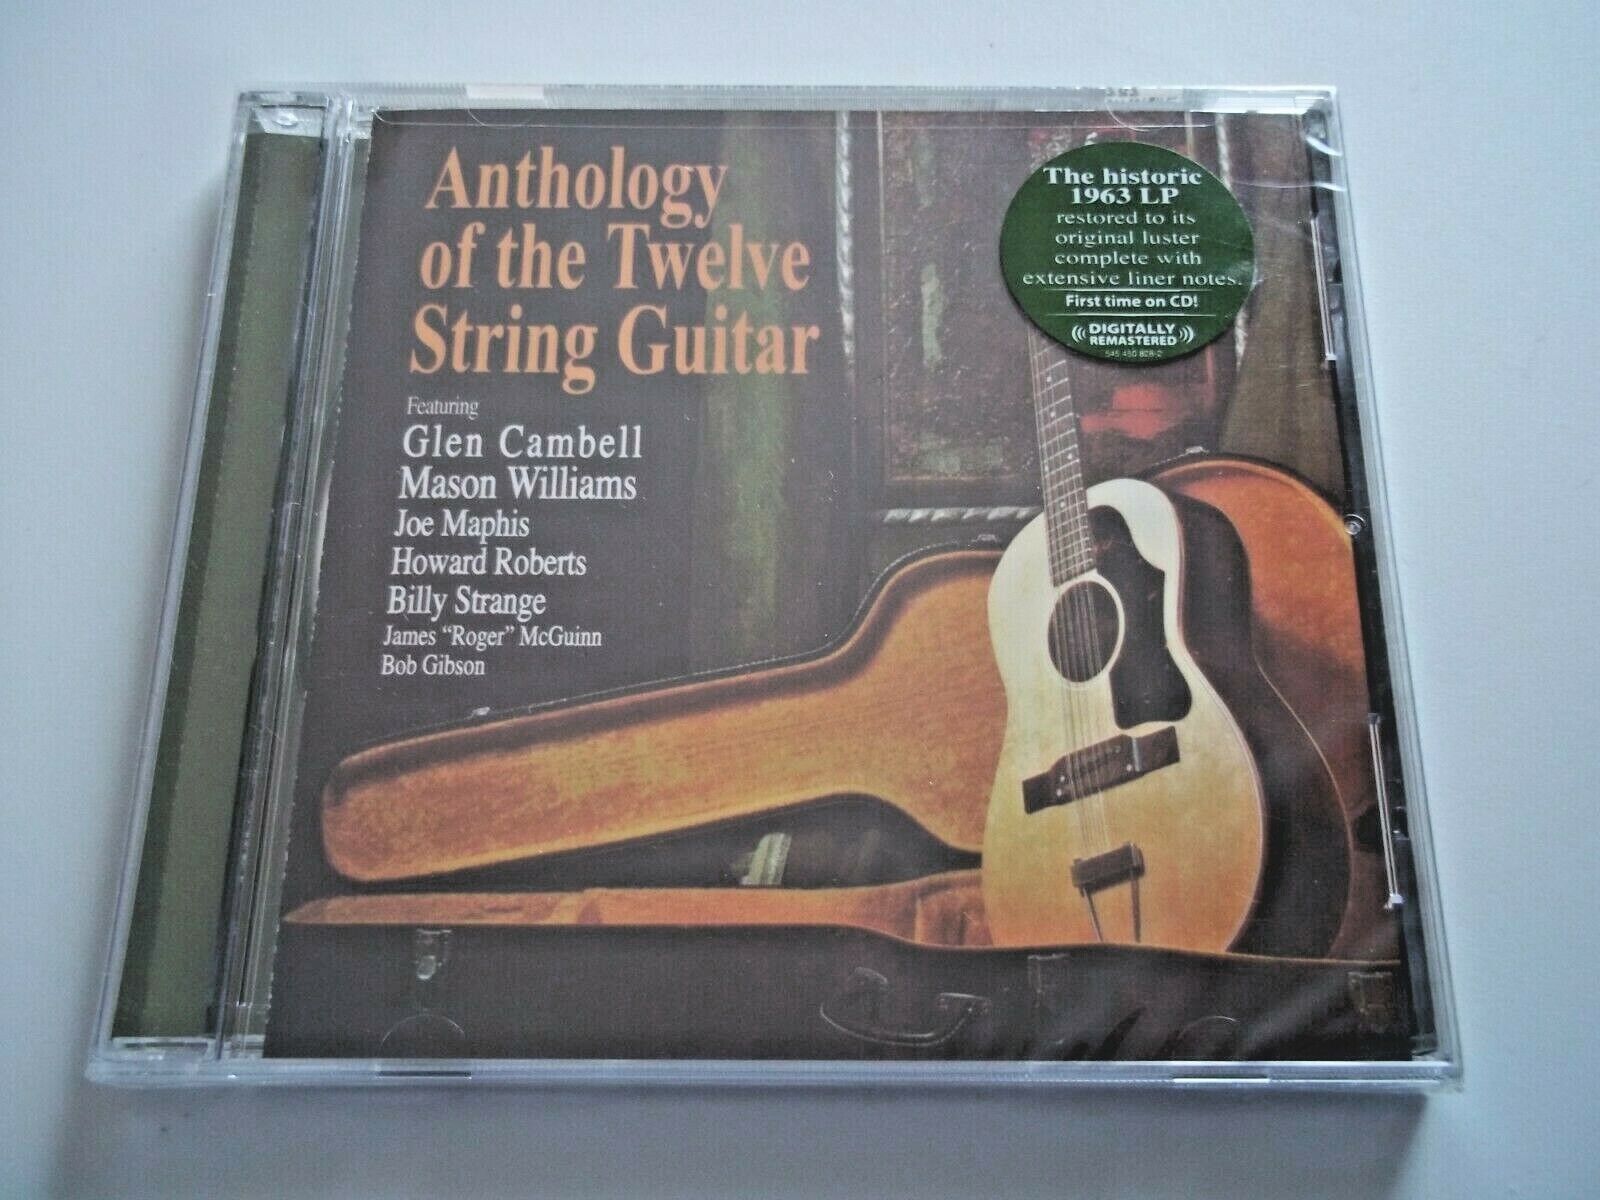 CD Anthology Of The Twelve String Guitar - Historic 1963 LP Restored 2006 KLEIN